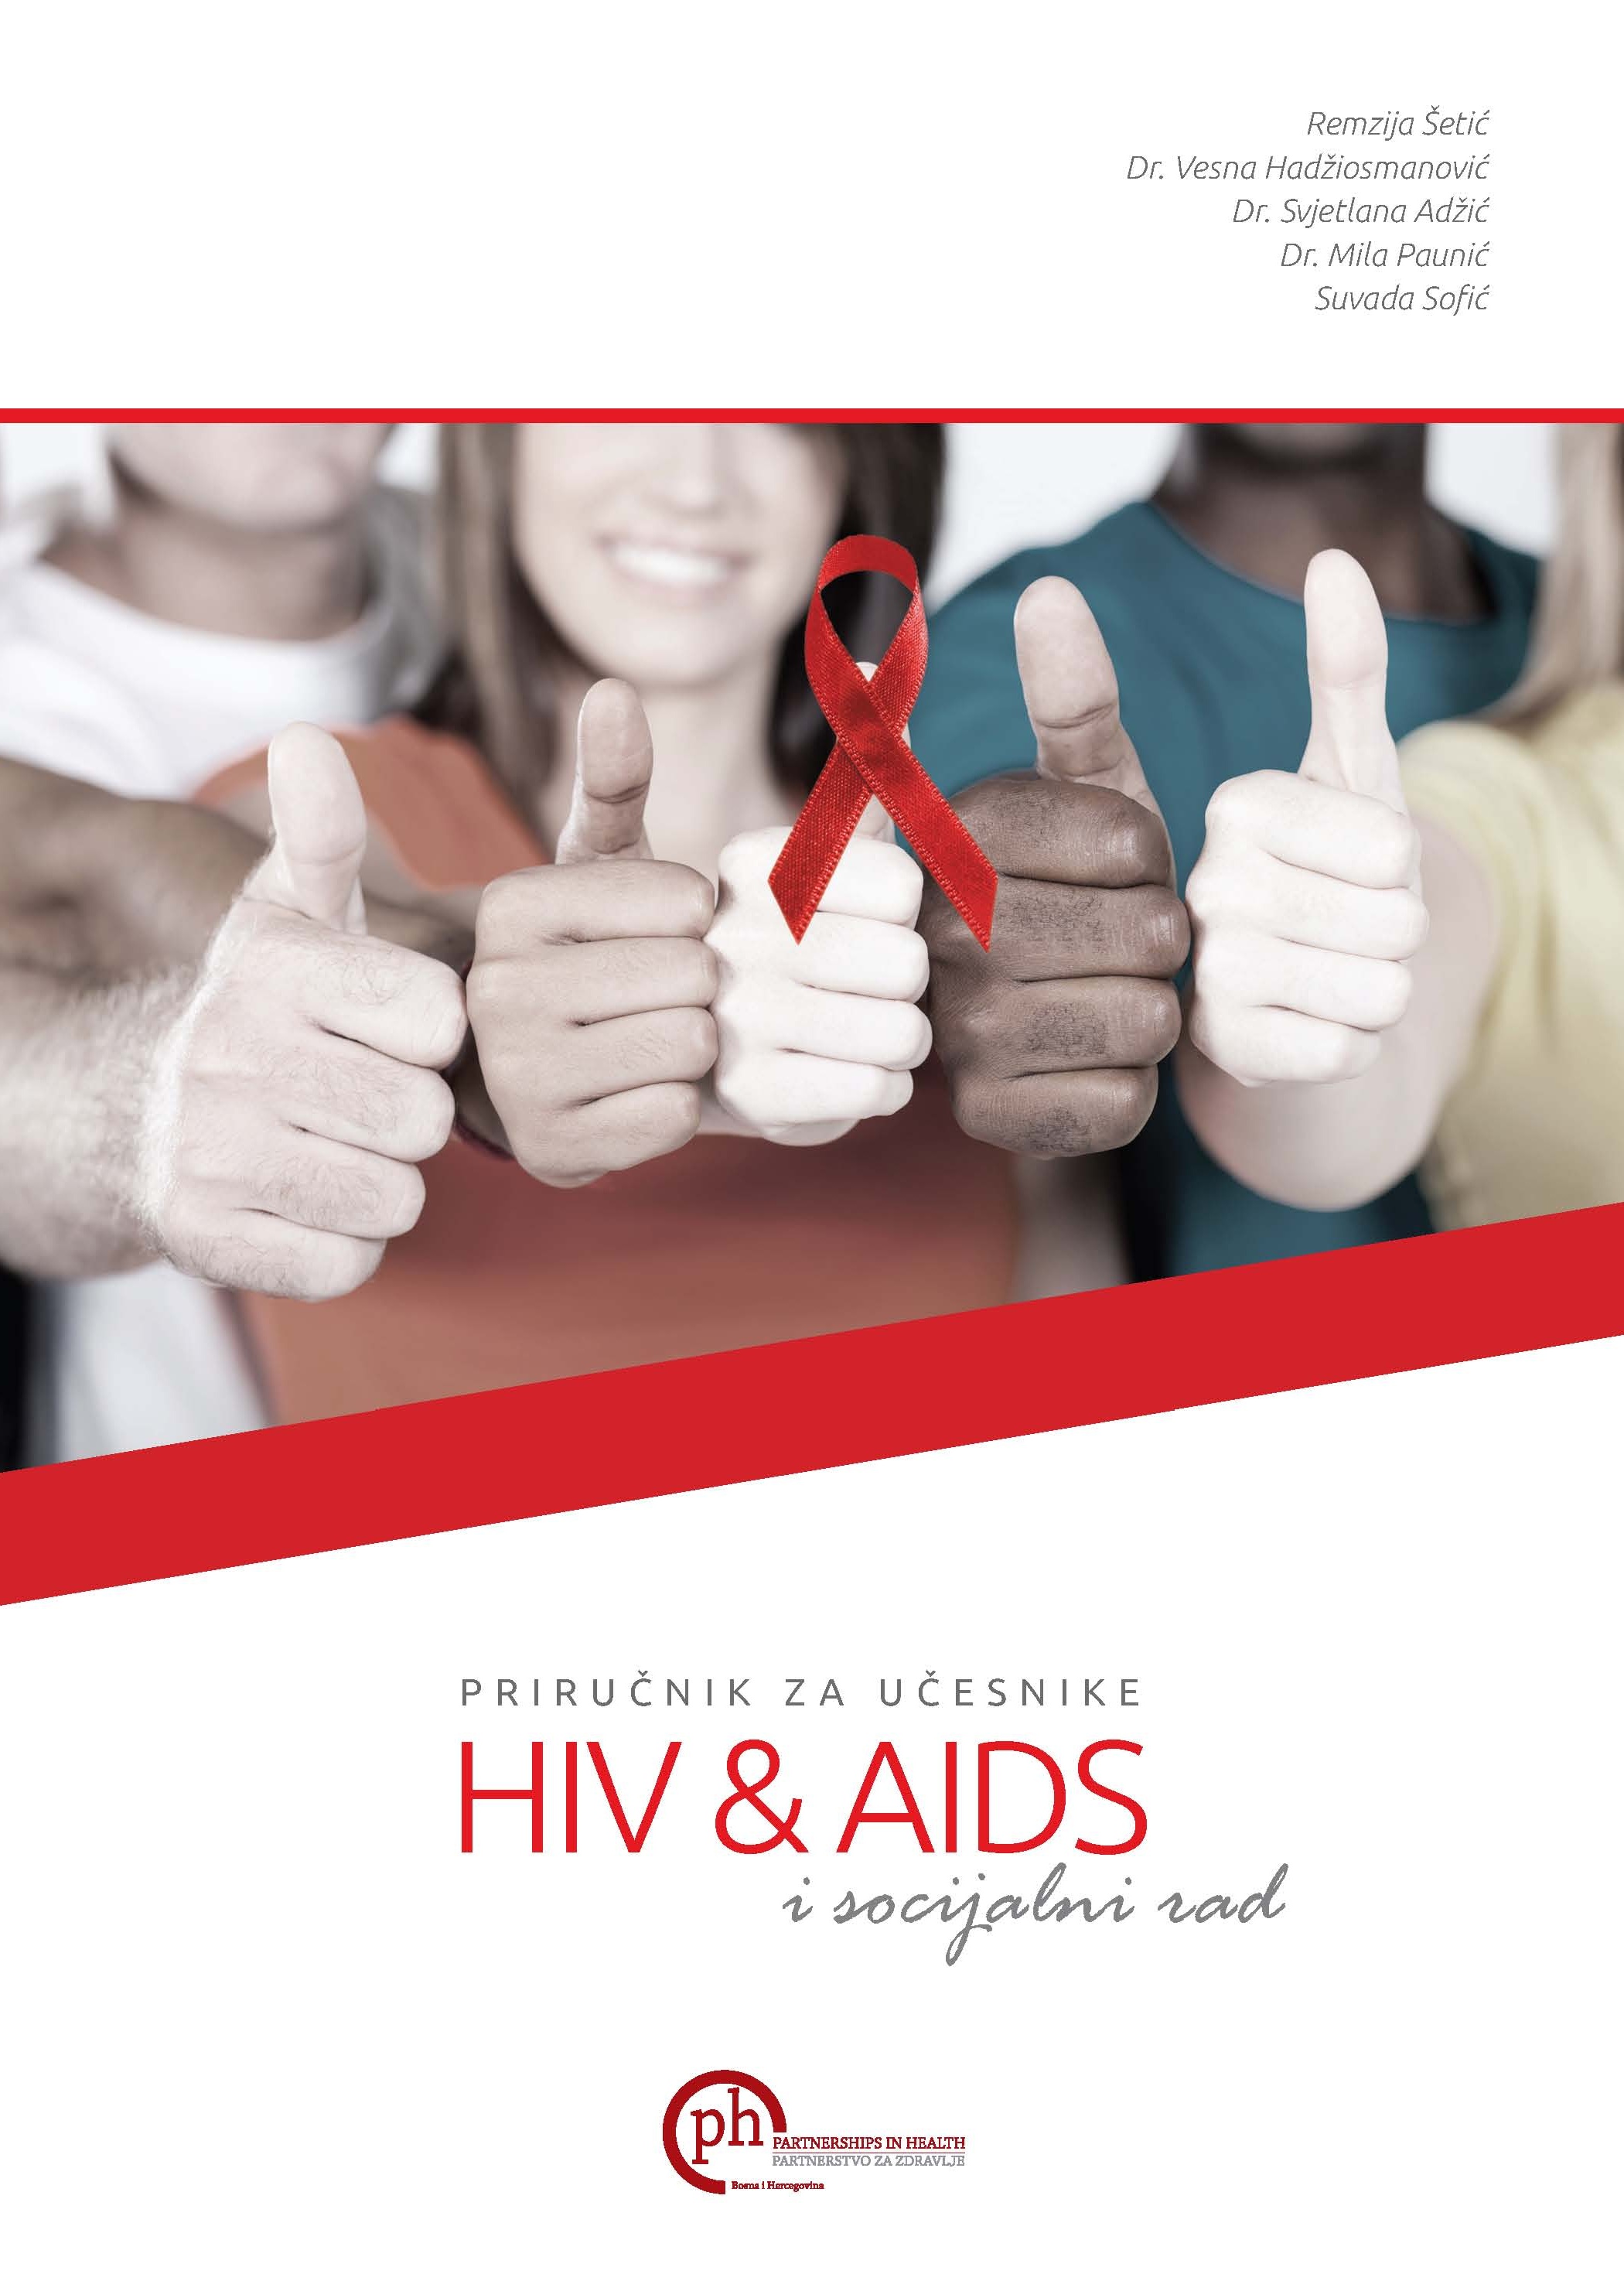 HIV, AIDS i socijalni rad - Brošura za učesnike